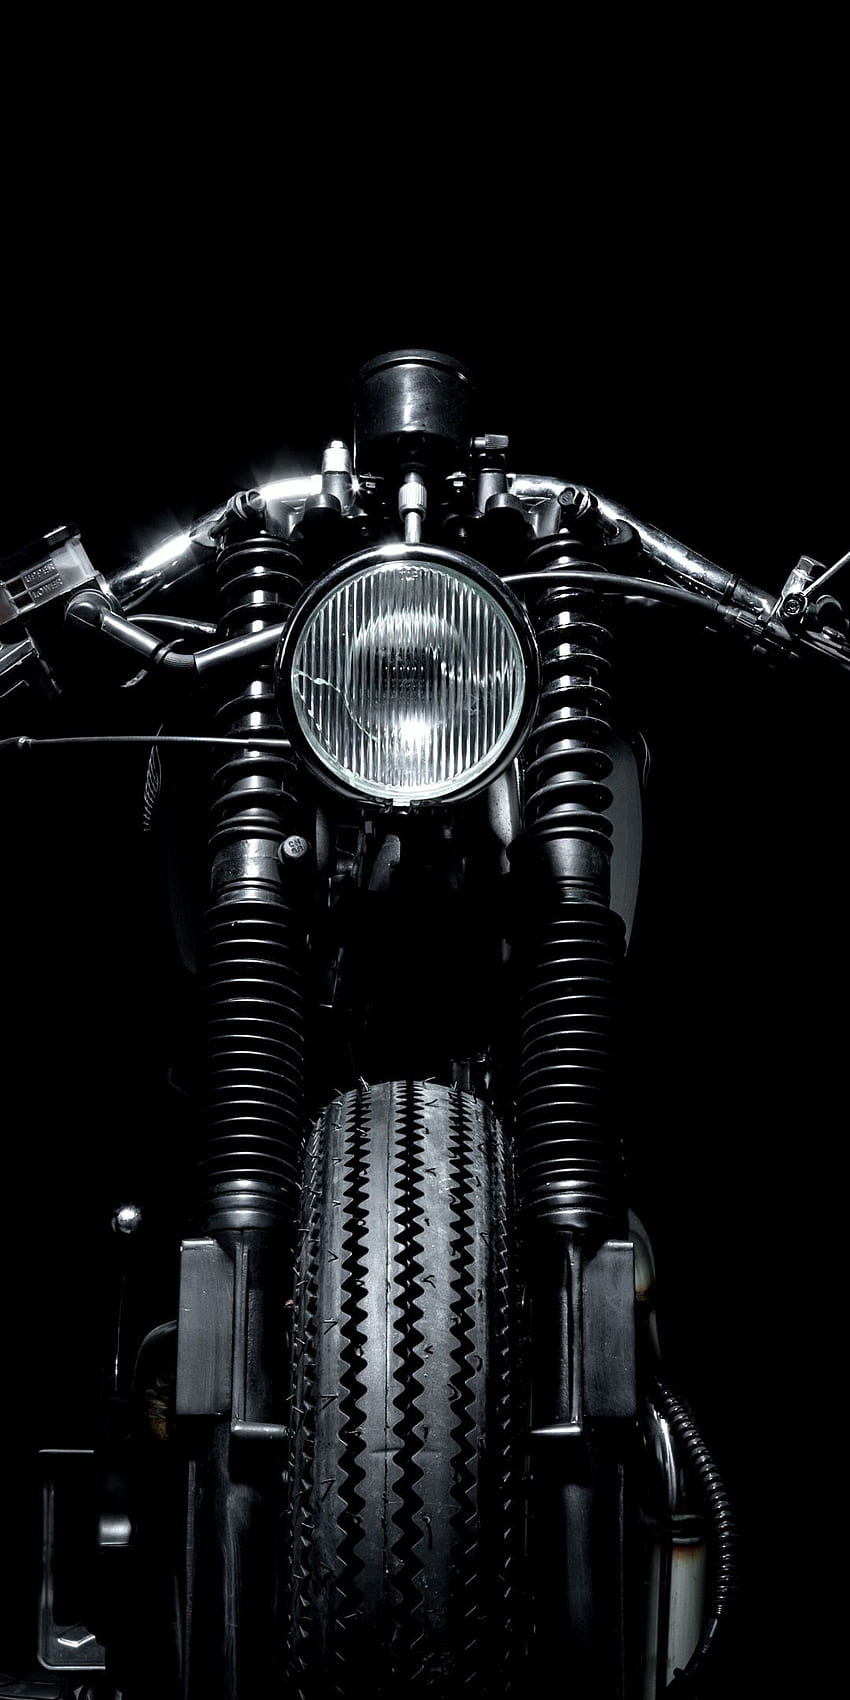 オートバイのポートレート 10802160 。 オートバイのページ。 オートバイ , オートバイの, カフェレーサーバイク, ハーレーダビッドソン HD電話の壁紙